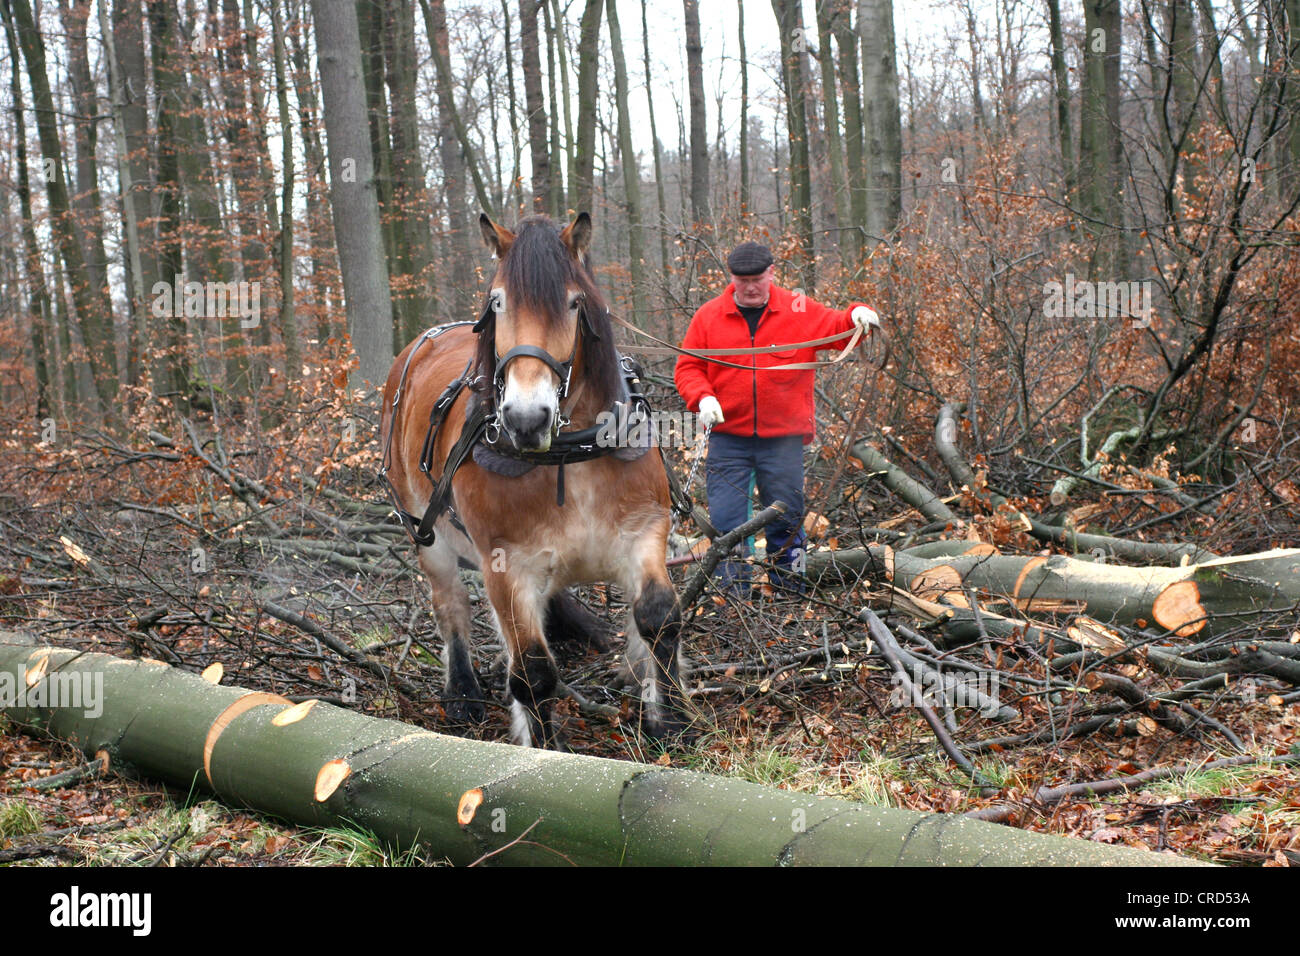 Projet de Westphalie Rheinish Cheval (Equus przewalskii f. caballus), projet de cheval dans une forêt, Allemagne, Rhénanie du Nord-Westphalie Banque D'Images